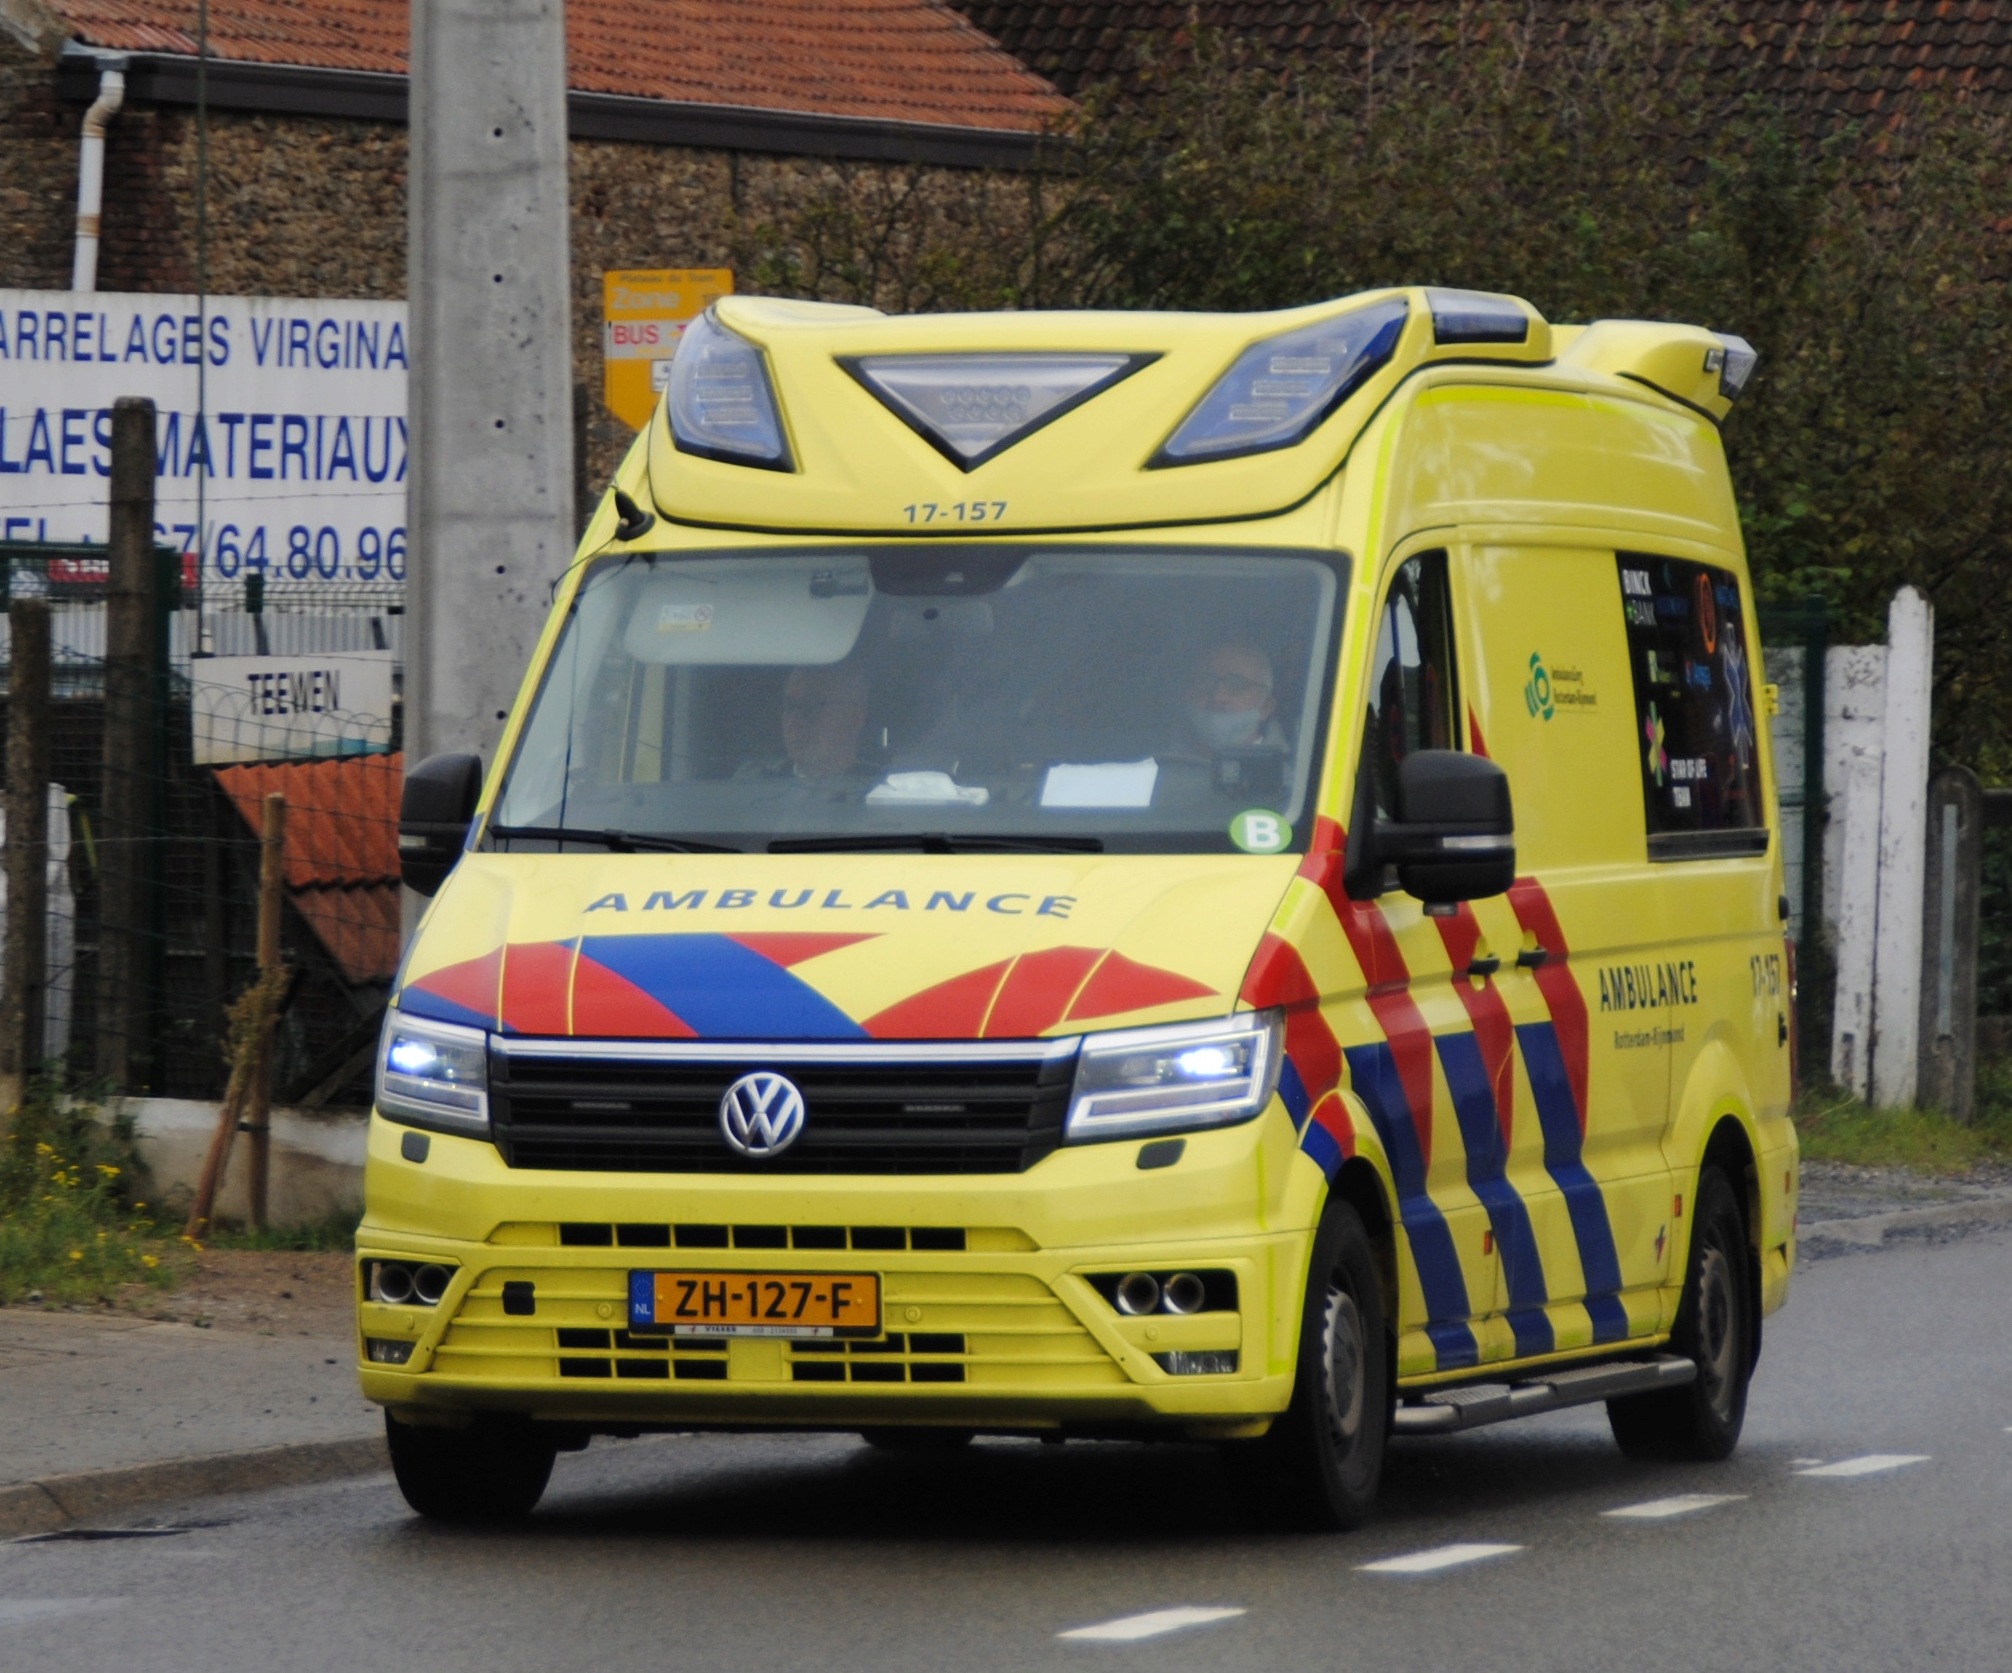 Ambulances des Pays Bas  Dsc_0409